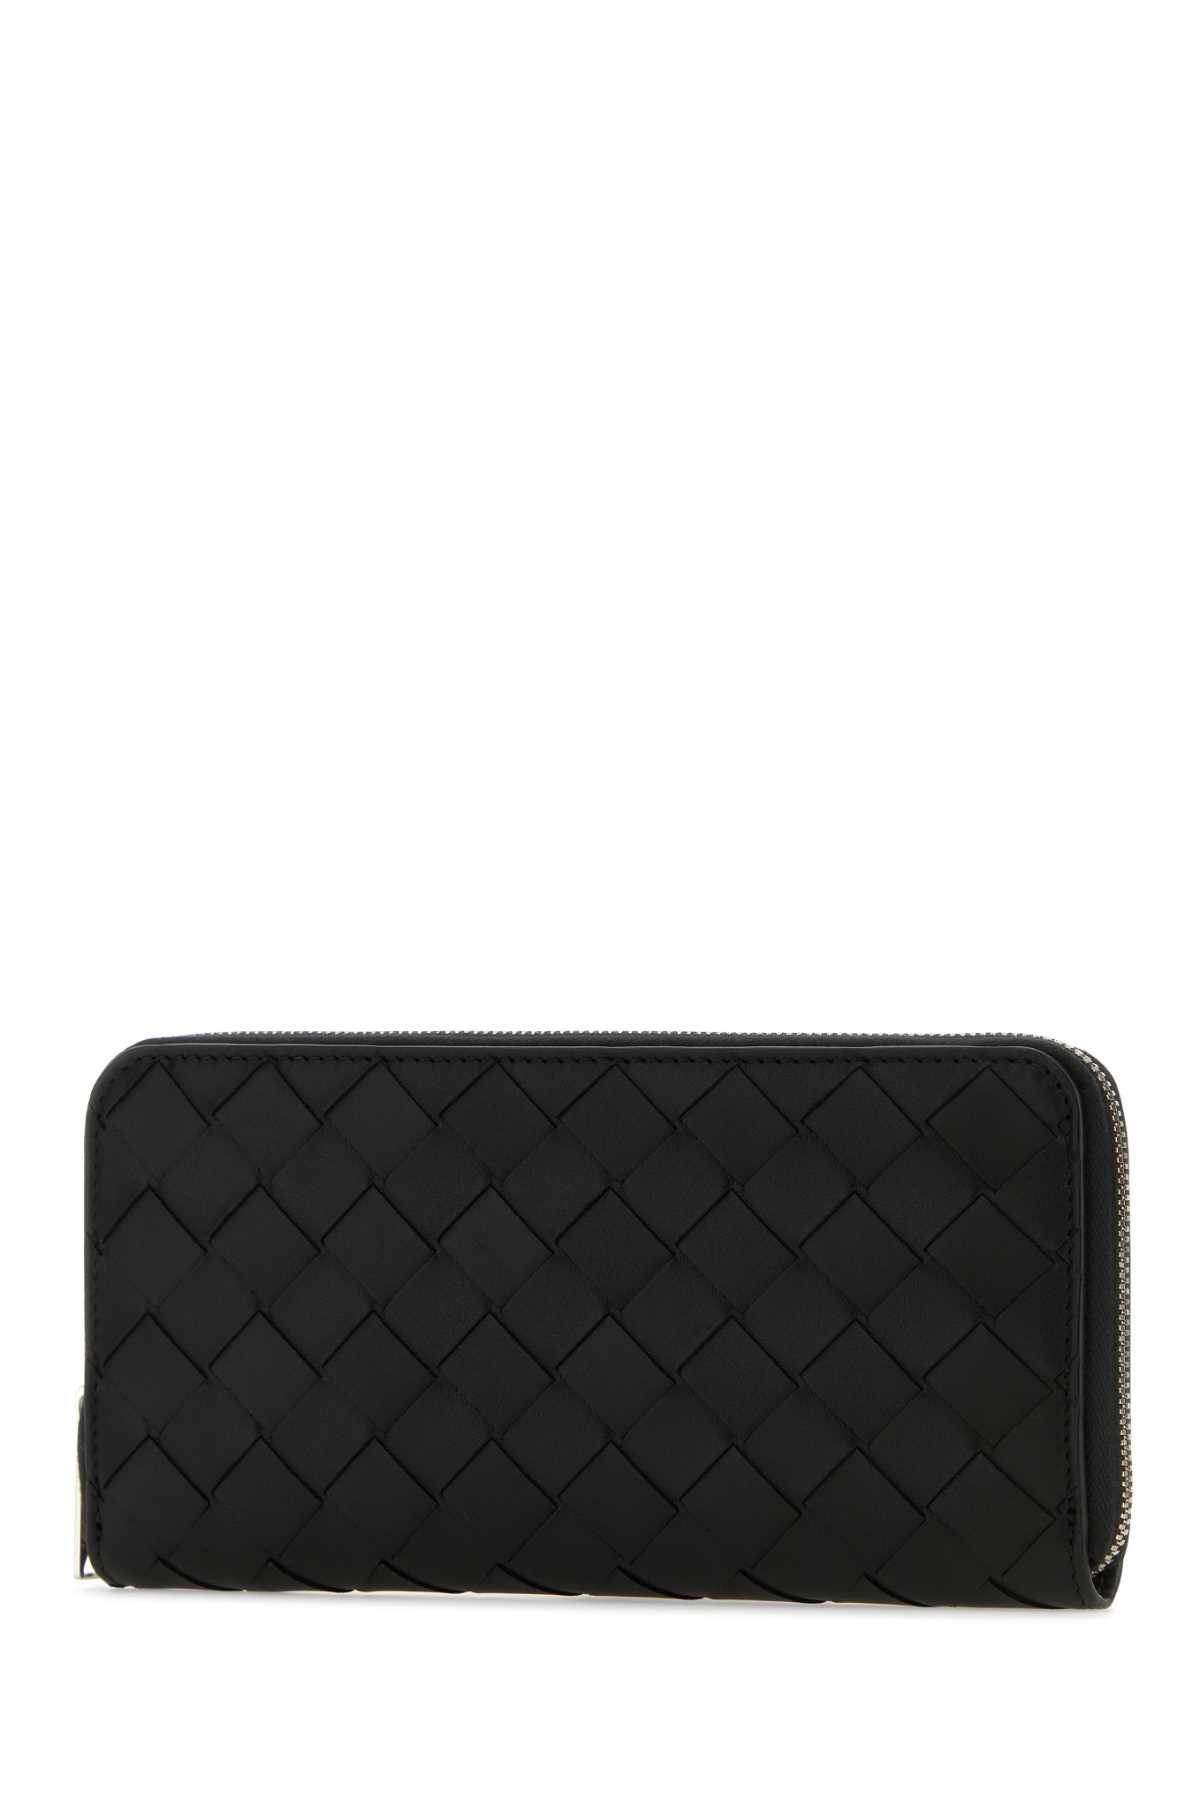 Shop Bottega Veneta Black Nappa Leather Wallet In Blacksilver